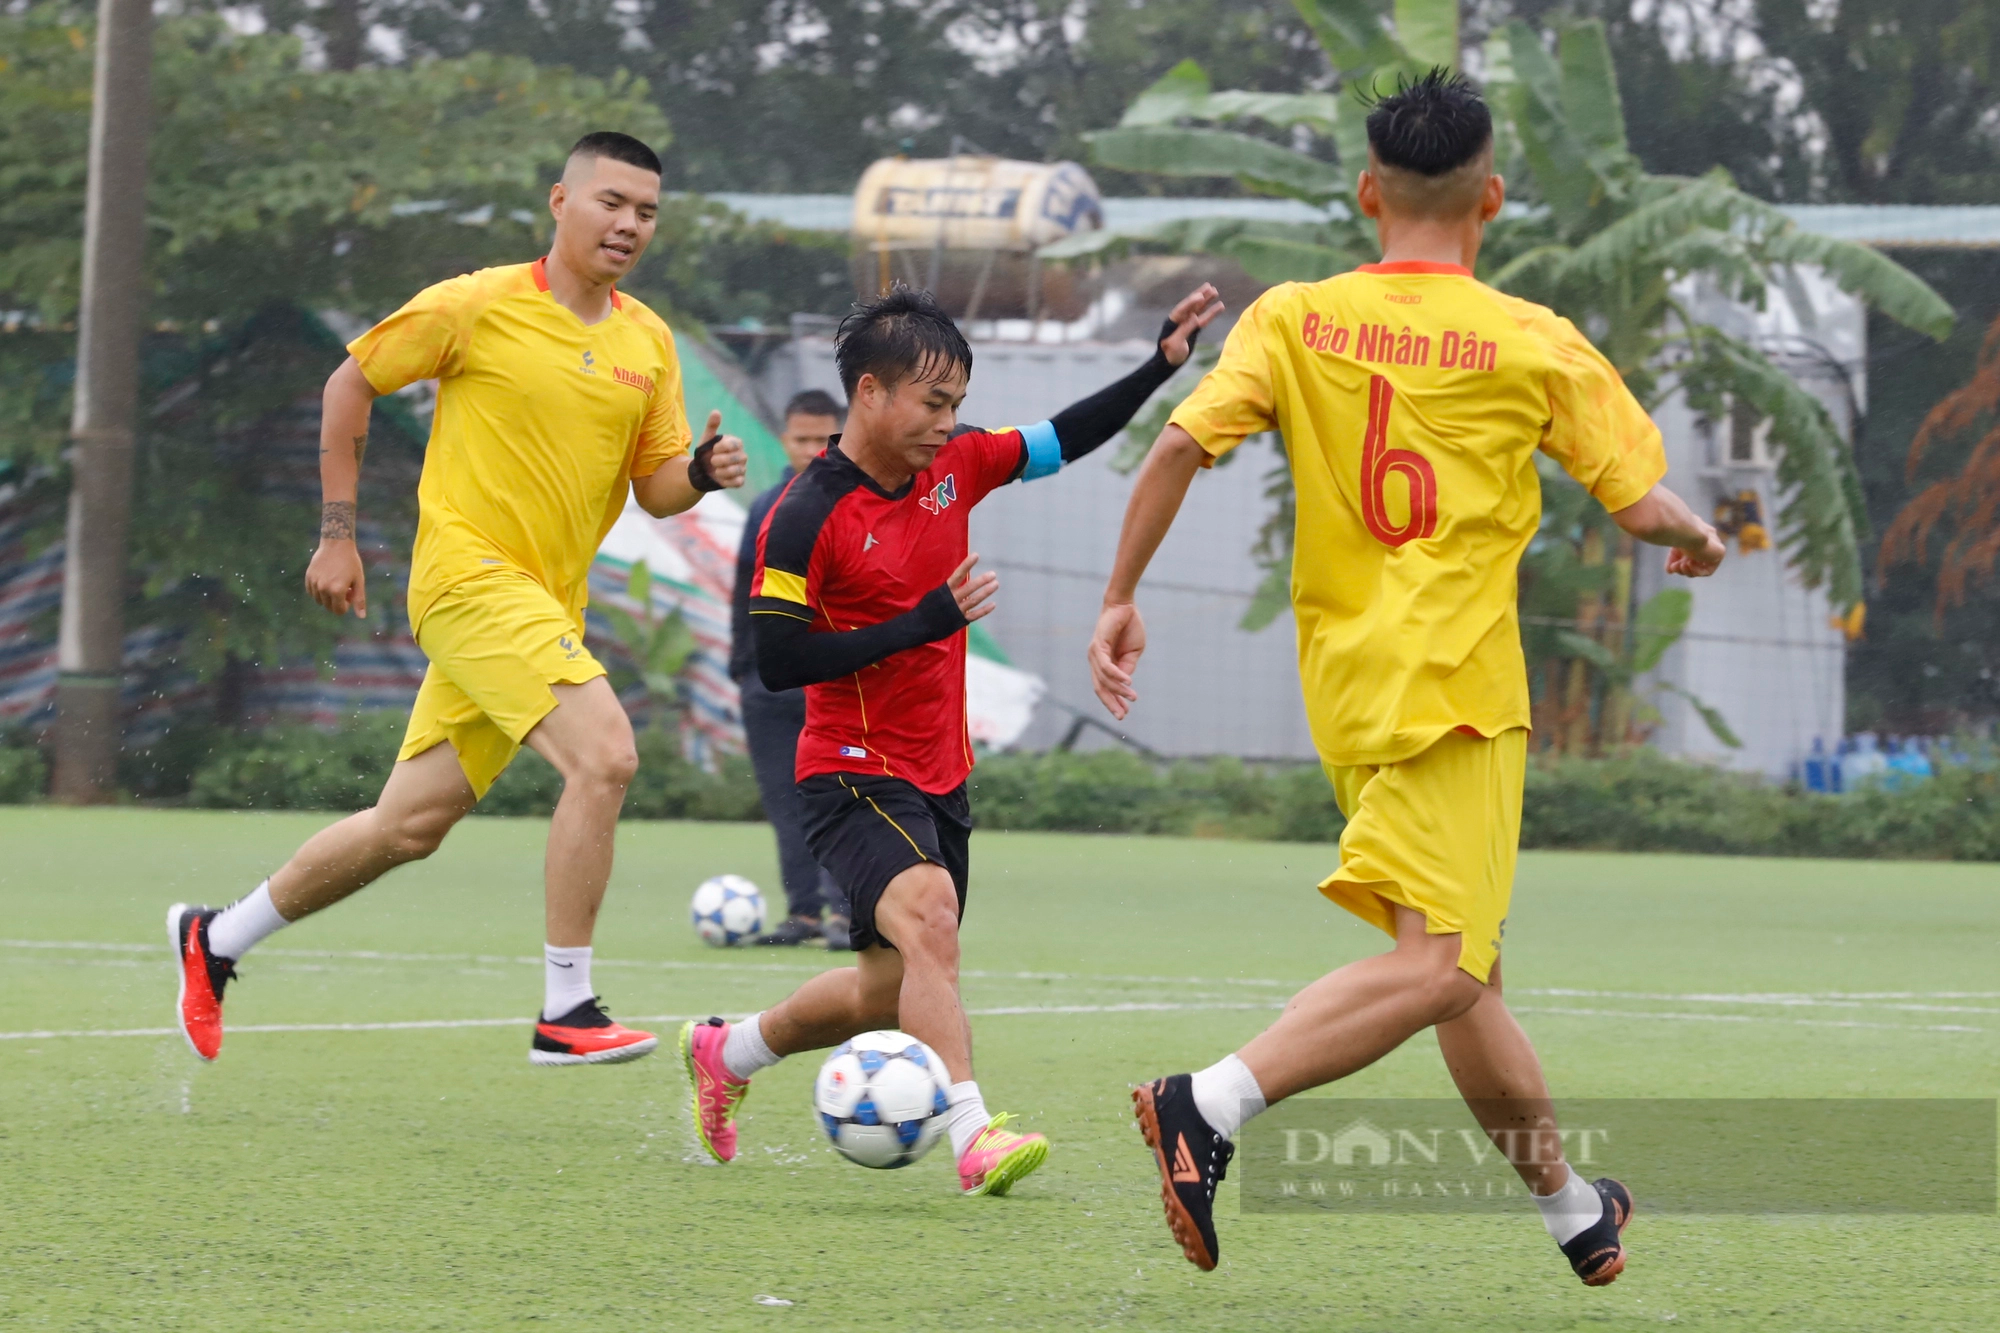 Loạt ảnh buổi thi đấu đầu tiên của giải bóng đá Báo NTNN/Dân Việt - tranh cúp mùa Thu lần thứ 14 - Ảnh 10.